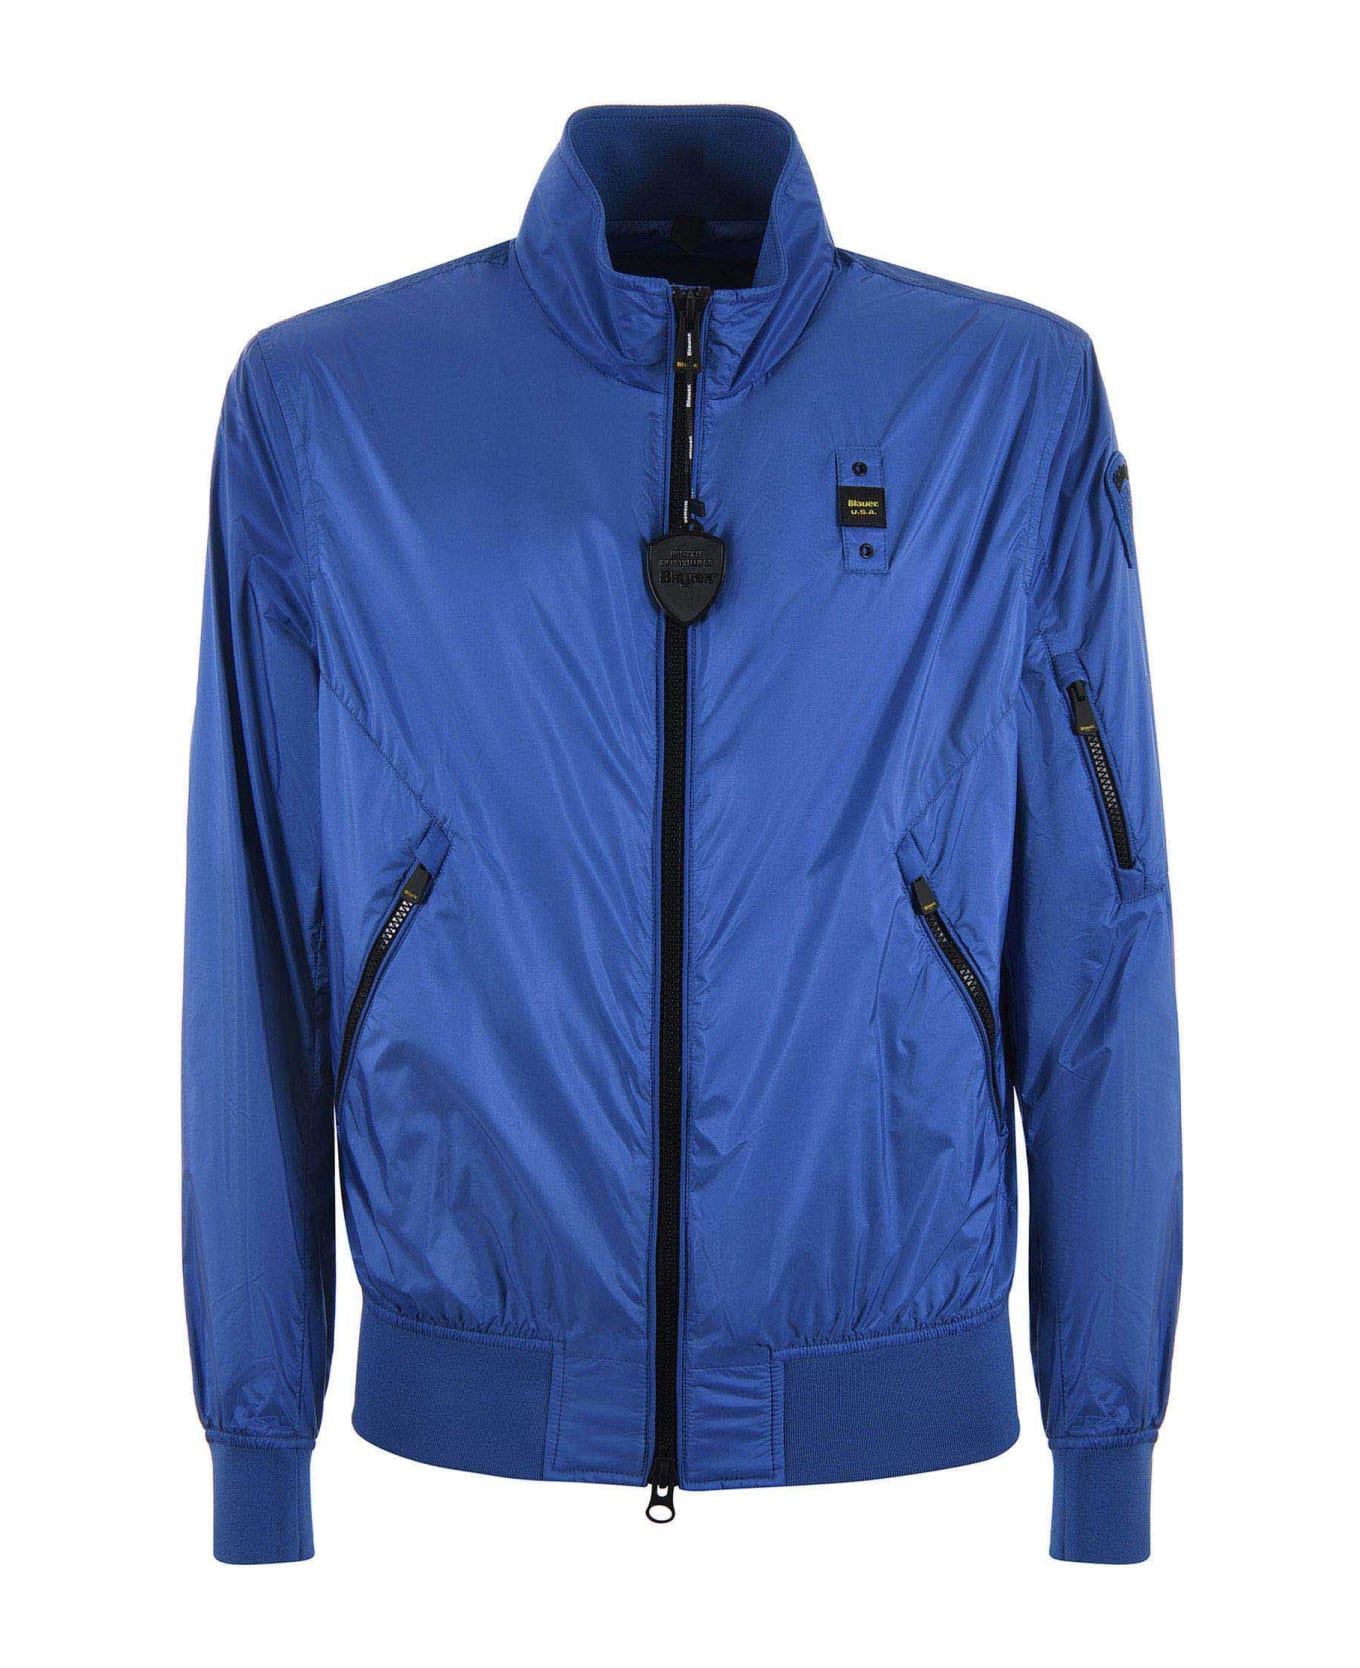 Blauer Jacket - Blu cobalto